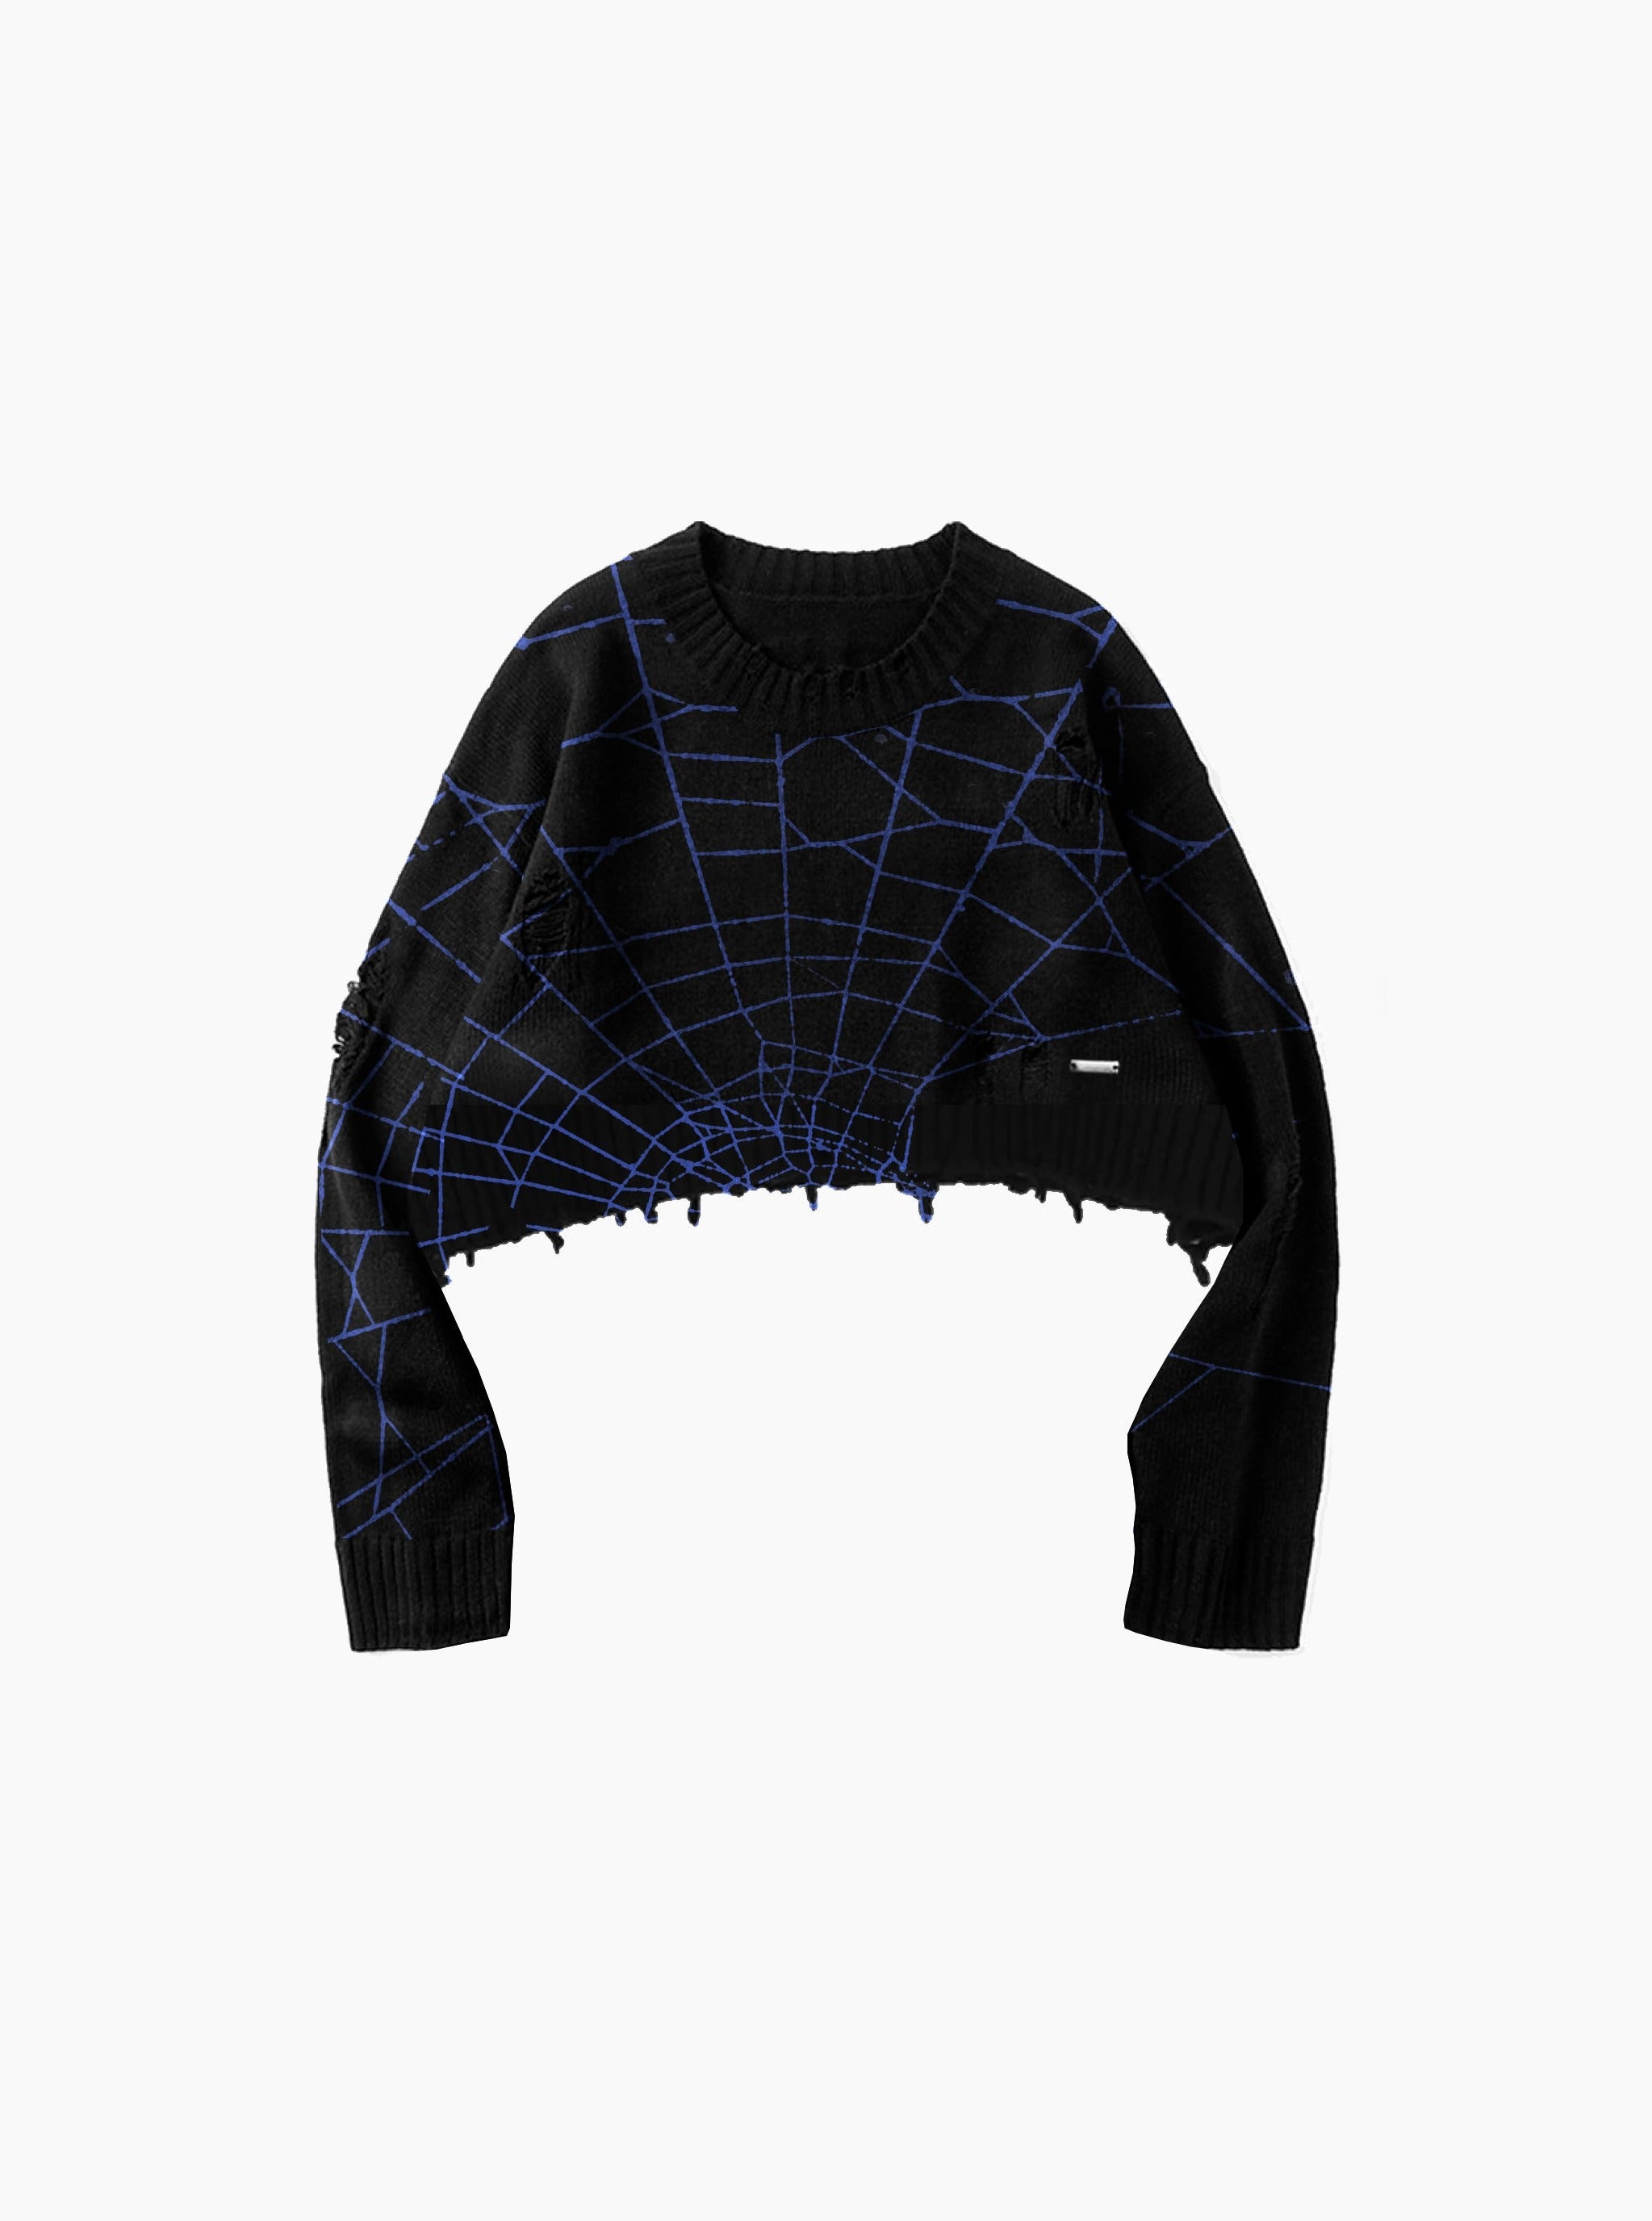 Sole et. Al Dark Web Distressed Knit Sweater til kvinder